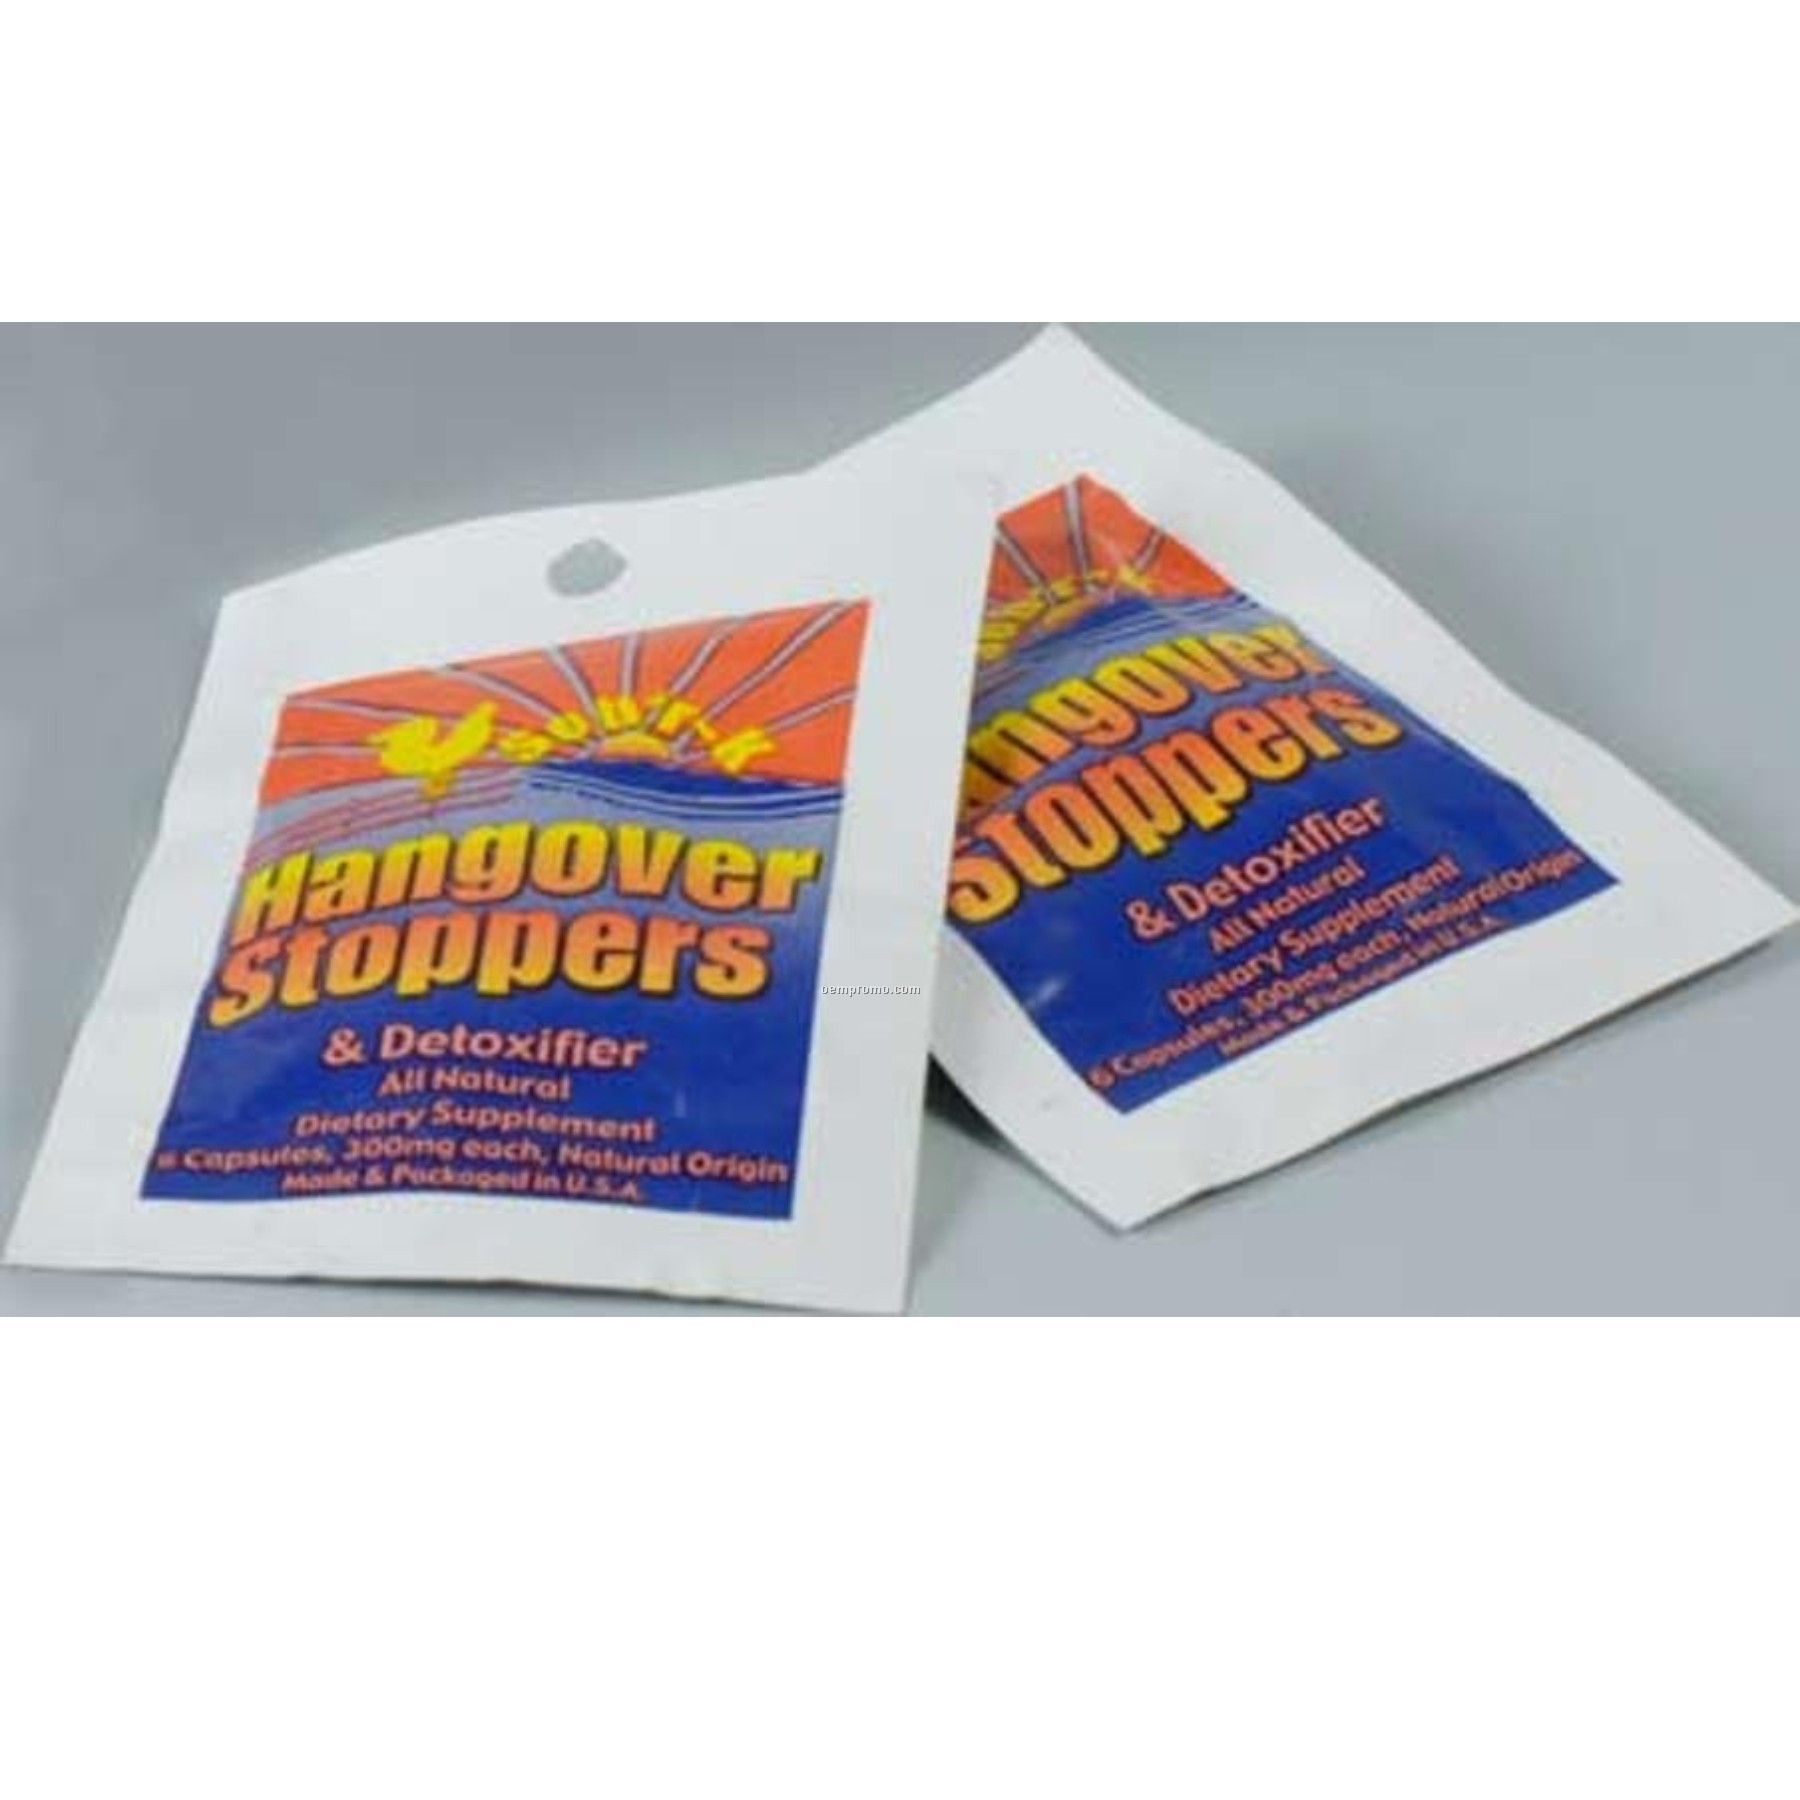 Sob'r-k Hangover Stoppers- Two Foil Packs On Blister Card